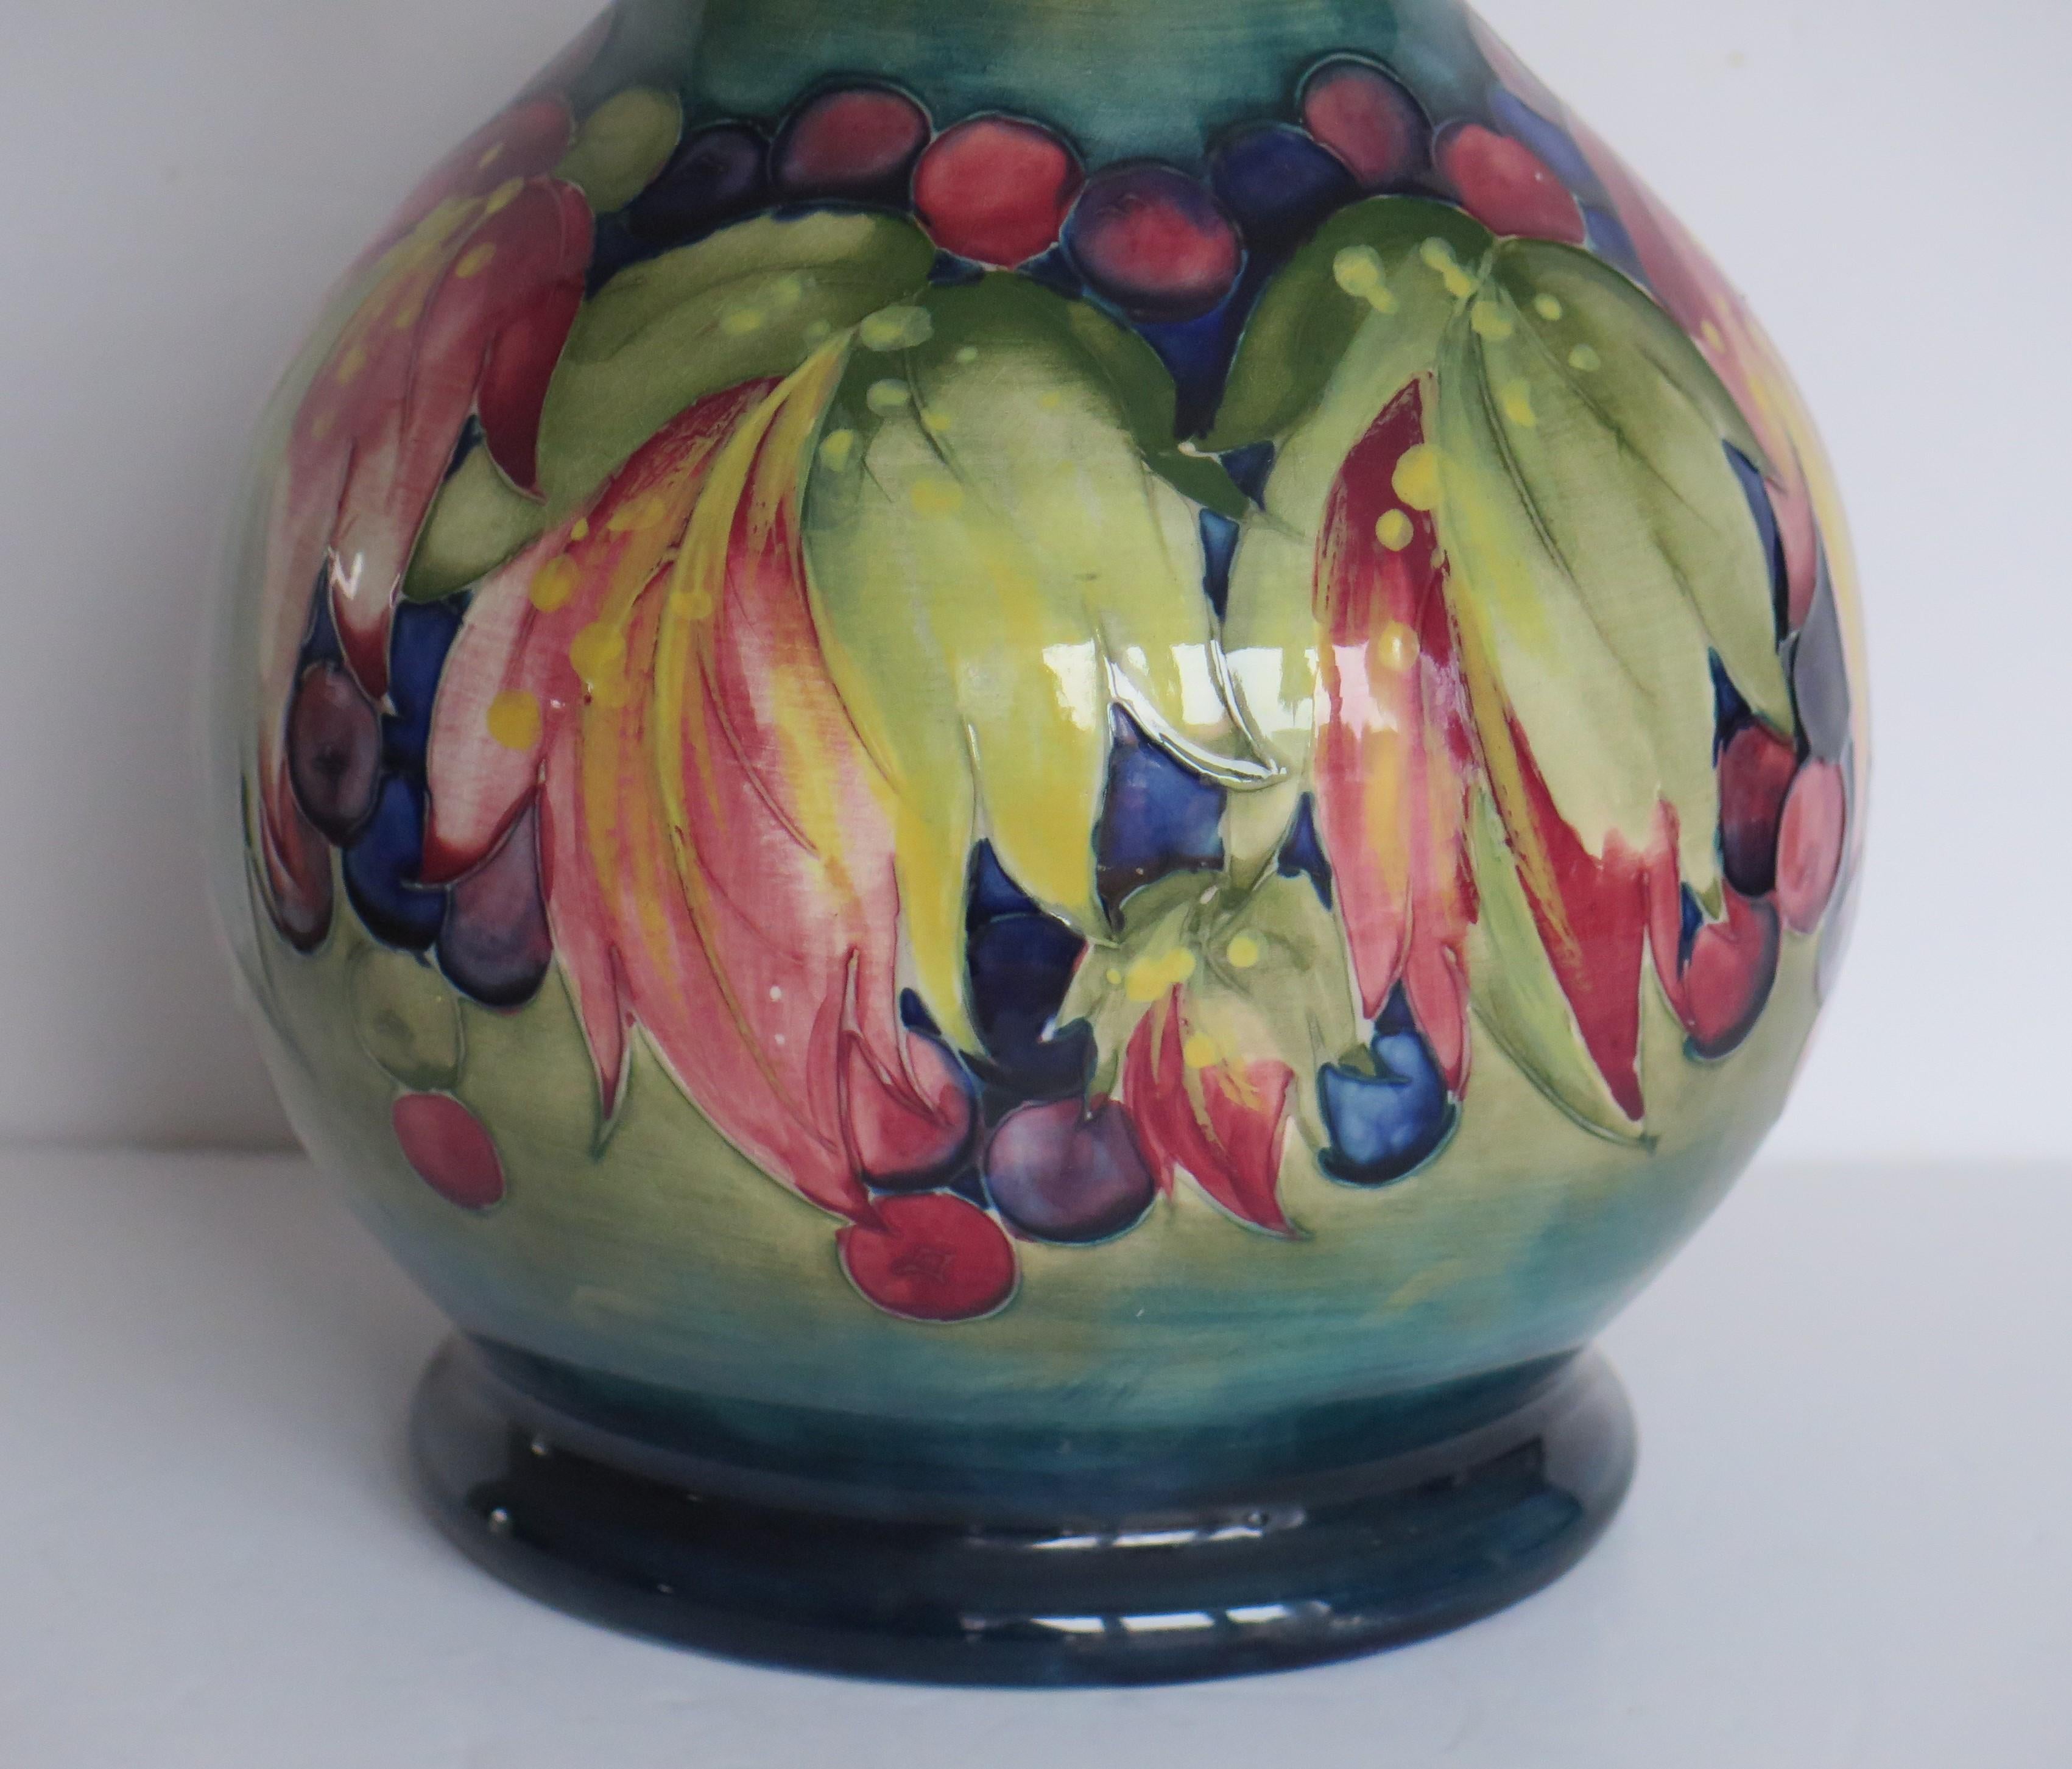 Il s'agit d'un très bon exemple précoce d'un grand vase fabriqué par William Moorcroft, de Moorcroft Pottery, dans le motif Autumn Leaves et datant d'environ 1930.

Le motif est connu sous le nom de feuilles d'automne, mais il est également connu